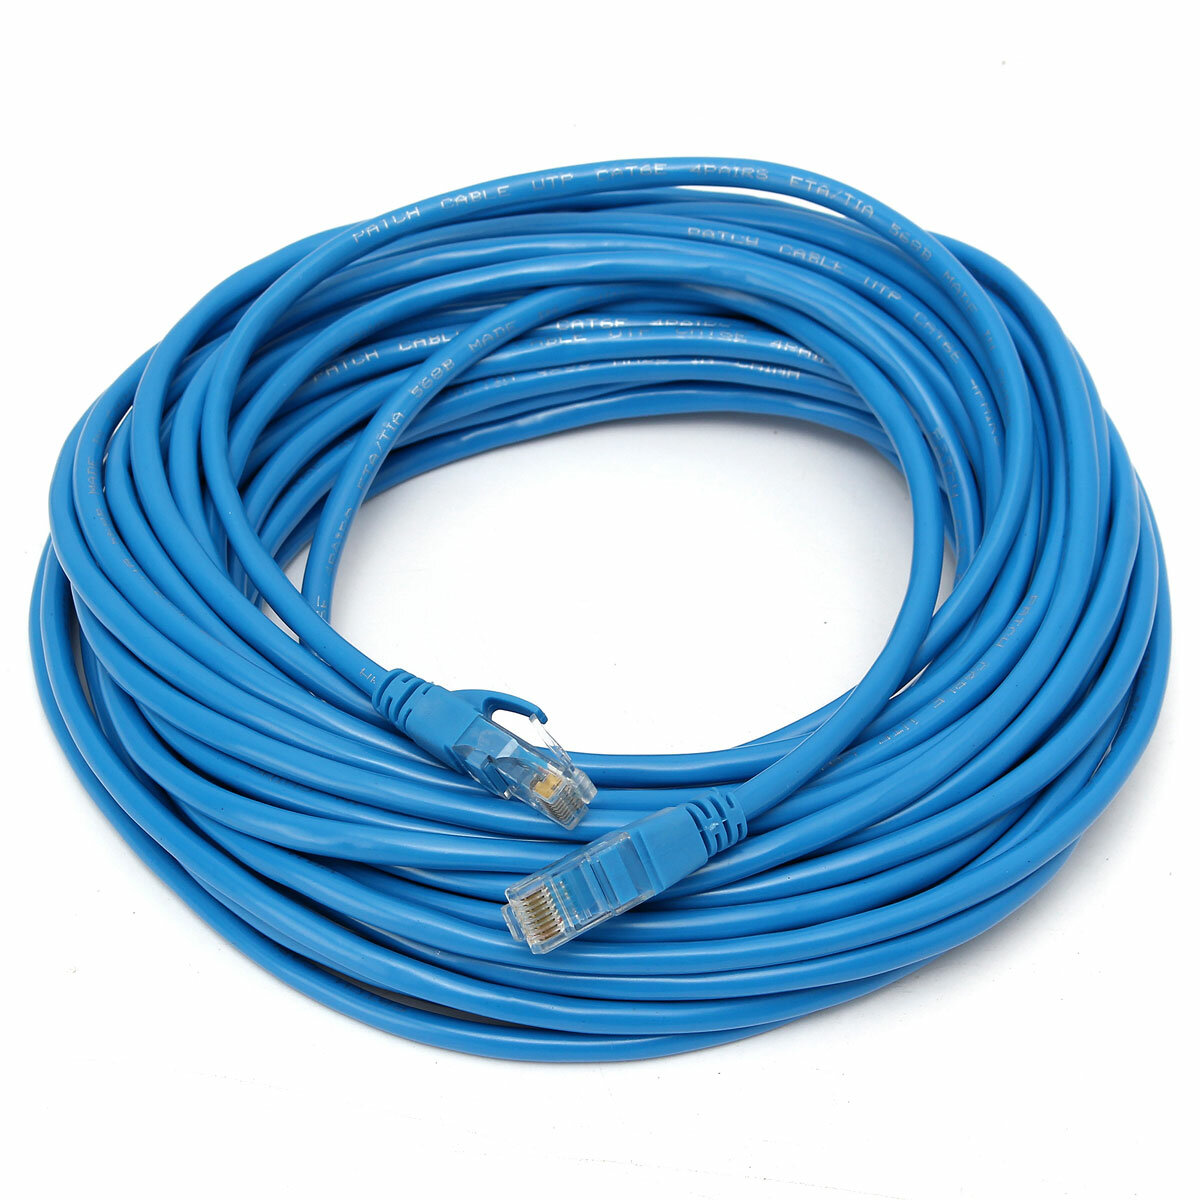 

15M 50FT RJ45 CAT6 сетевой кабель локальной сети Ethernet 1000 Мбит / с для быстрой передачи данных